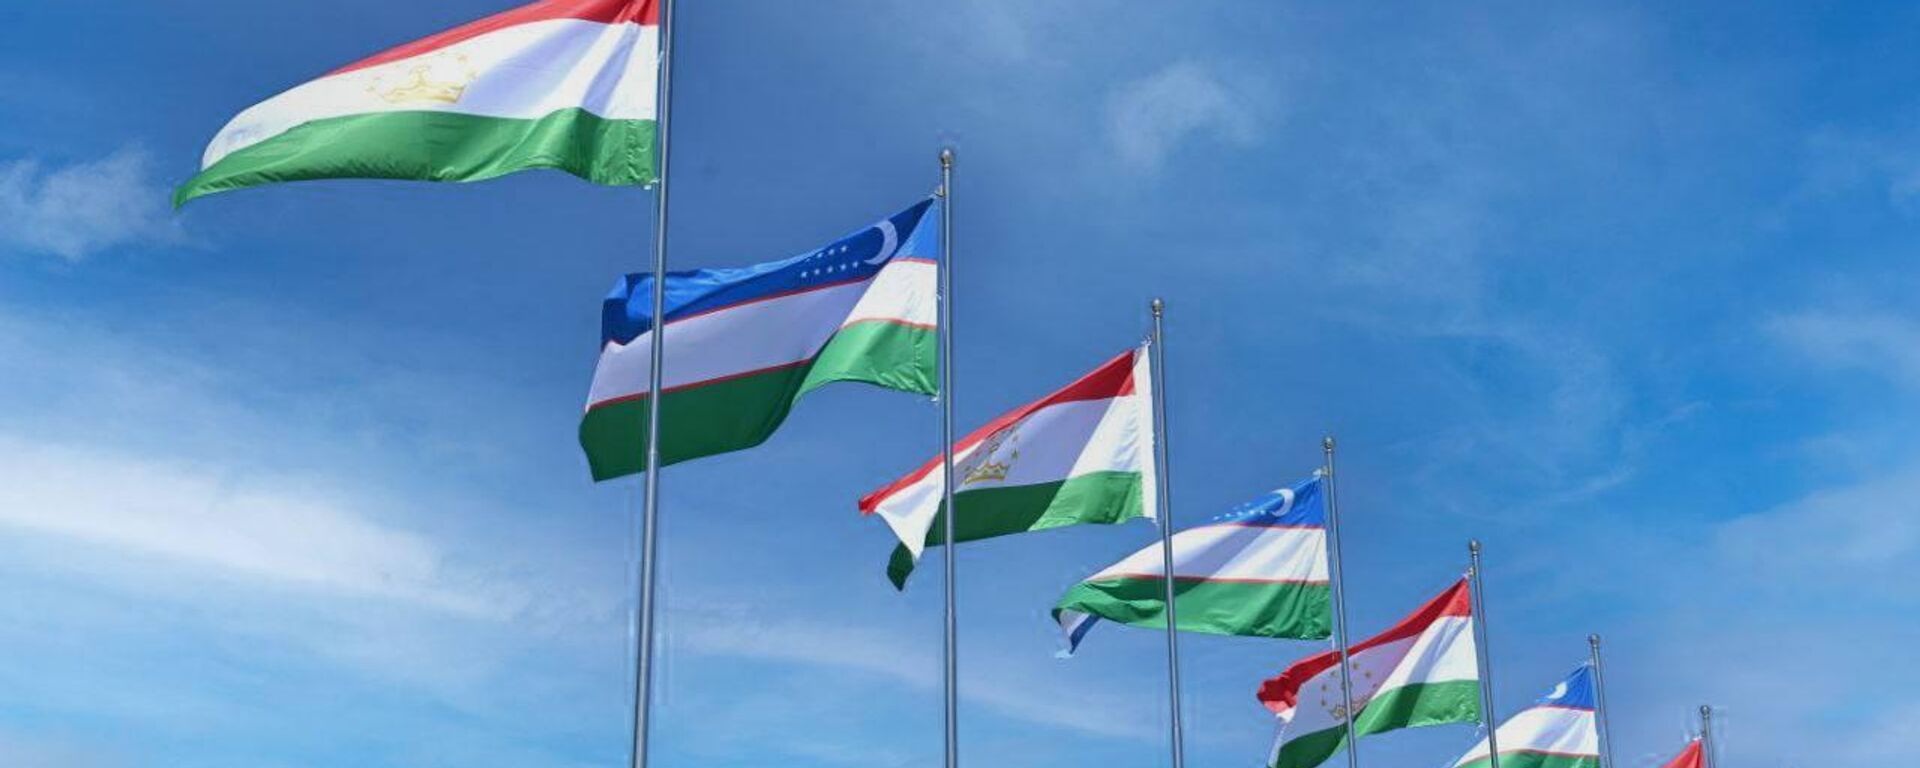 Национальные флаги Узбекистана и Таджикистана - Sputnik Тоҷикистон, 1920, 19.12.2022